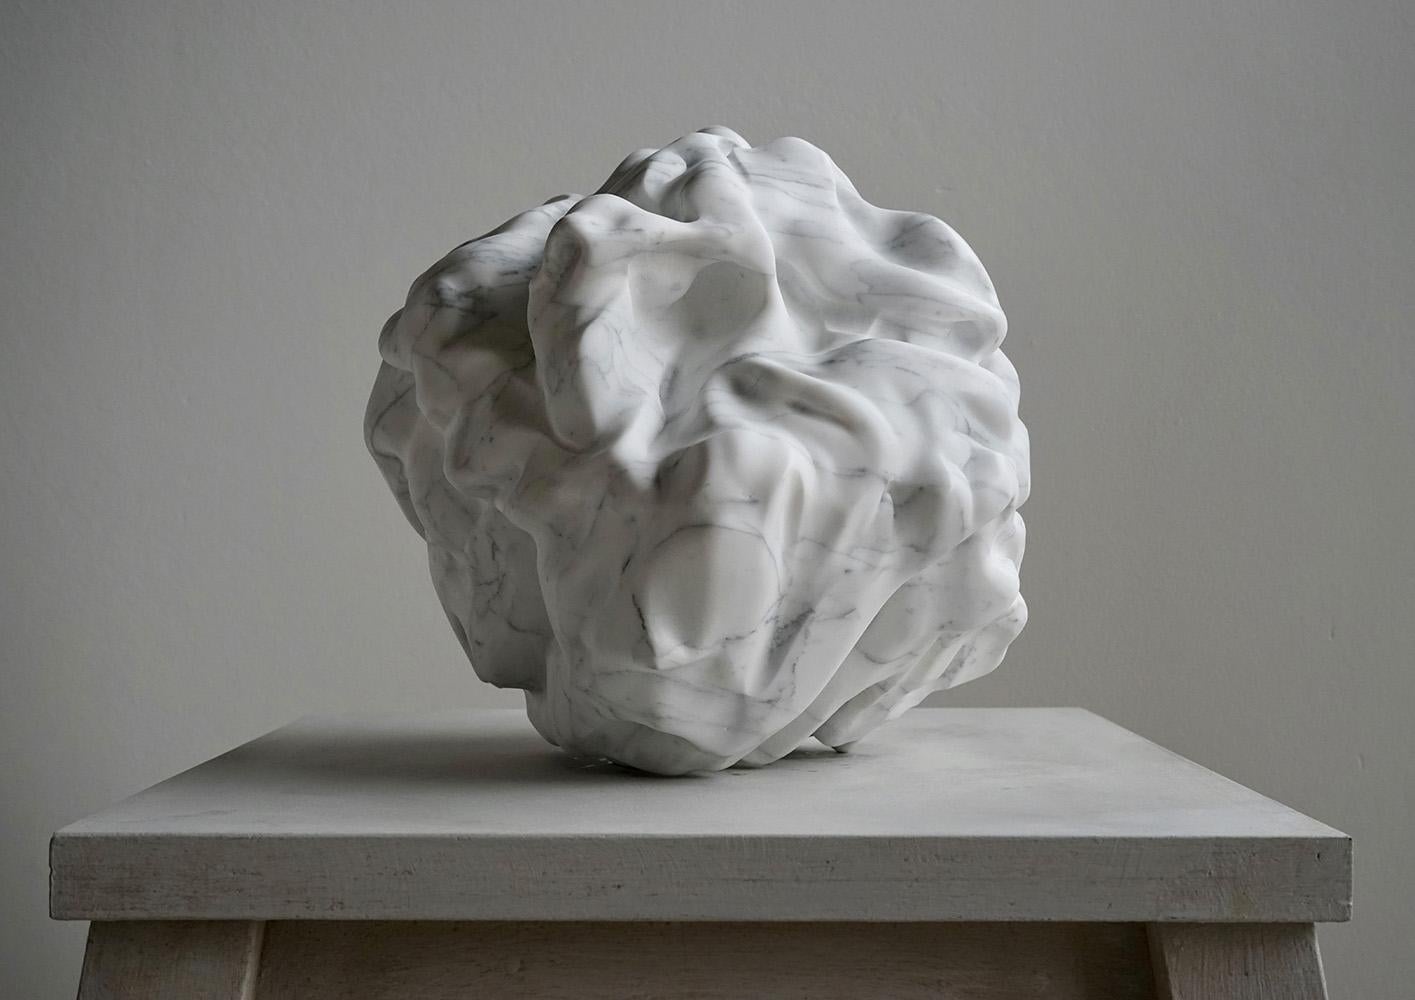 Ghost des britischen Künstlers Richard Perry (geb. 1960).
Skulptur aus Carrara-Marmor, 35 cm × 35 cm × 35 cm // 13,78 x 13,78 x 13,78 in.
Dieses Werk ist Teil einer neuen Serie des Künstlers, die sich durch organische und flexible Formen